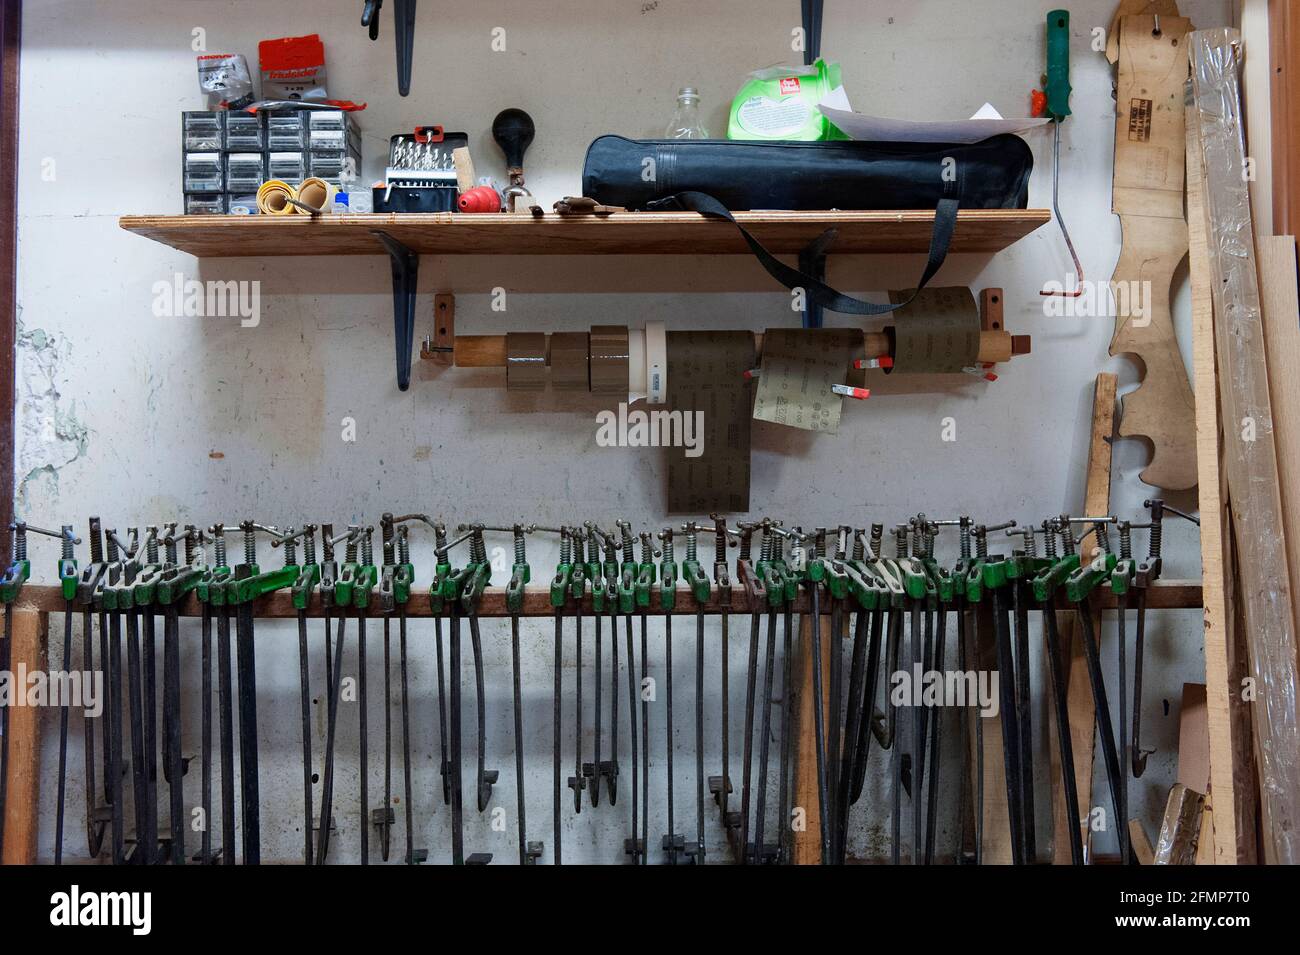 All'interno del laboratorio dell'artigiano Franco Furlanetto dove realizza ruggini fatti a mano (Forcole), Venezia, San Polo, Venezia, Veneto, Italia, Europa Foto Stock